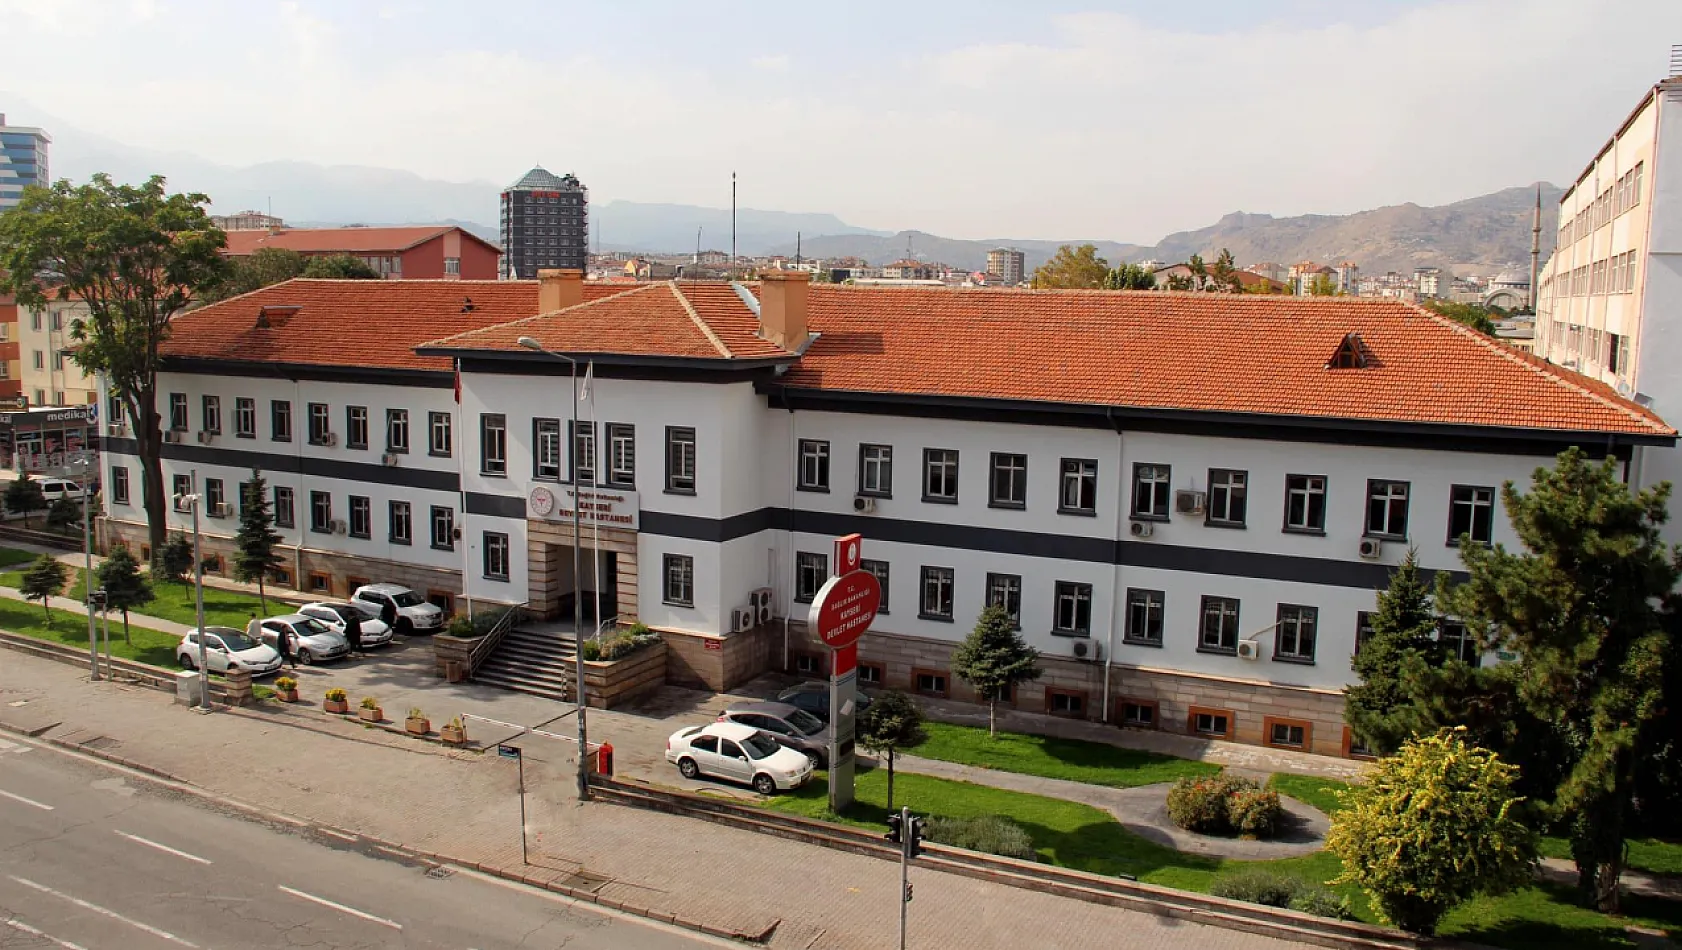 Flaş gelişme! Kayseri Devlet Hastanesi yıkılıyor mu? Dikkat çeken yıkım kararı